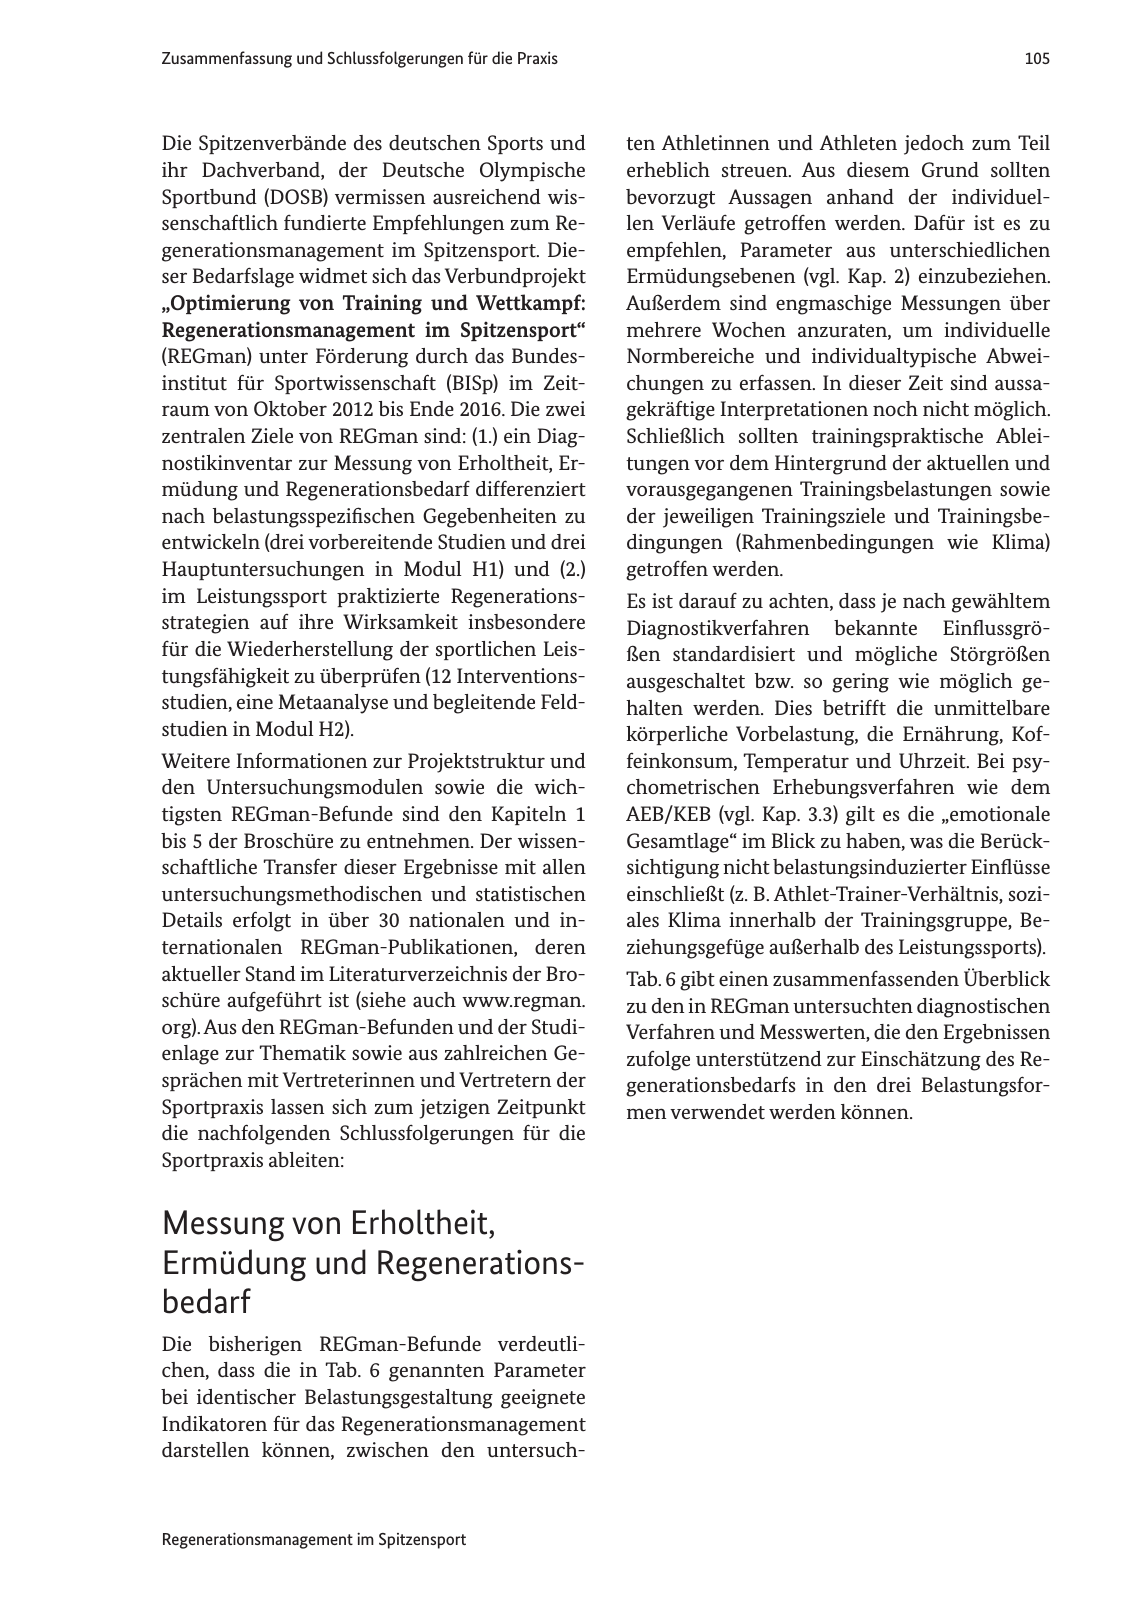 Vorschau Handreichung Regmann / Regenerationsmanagement im Spitzensport Seite 106